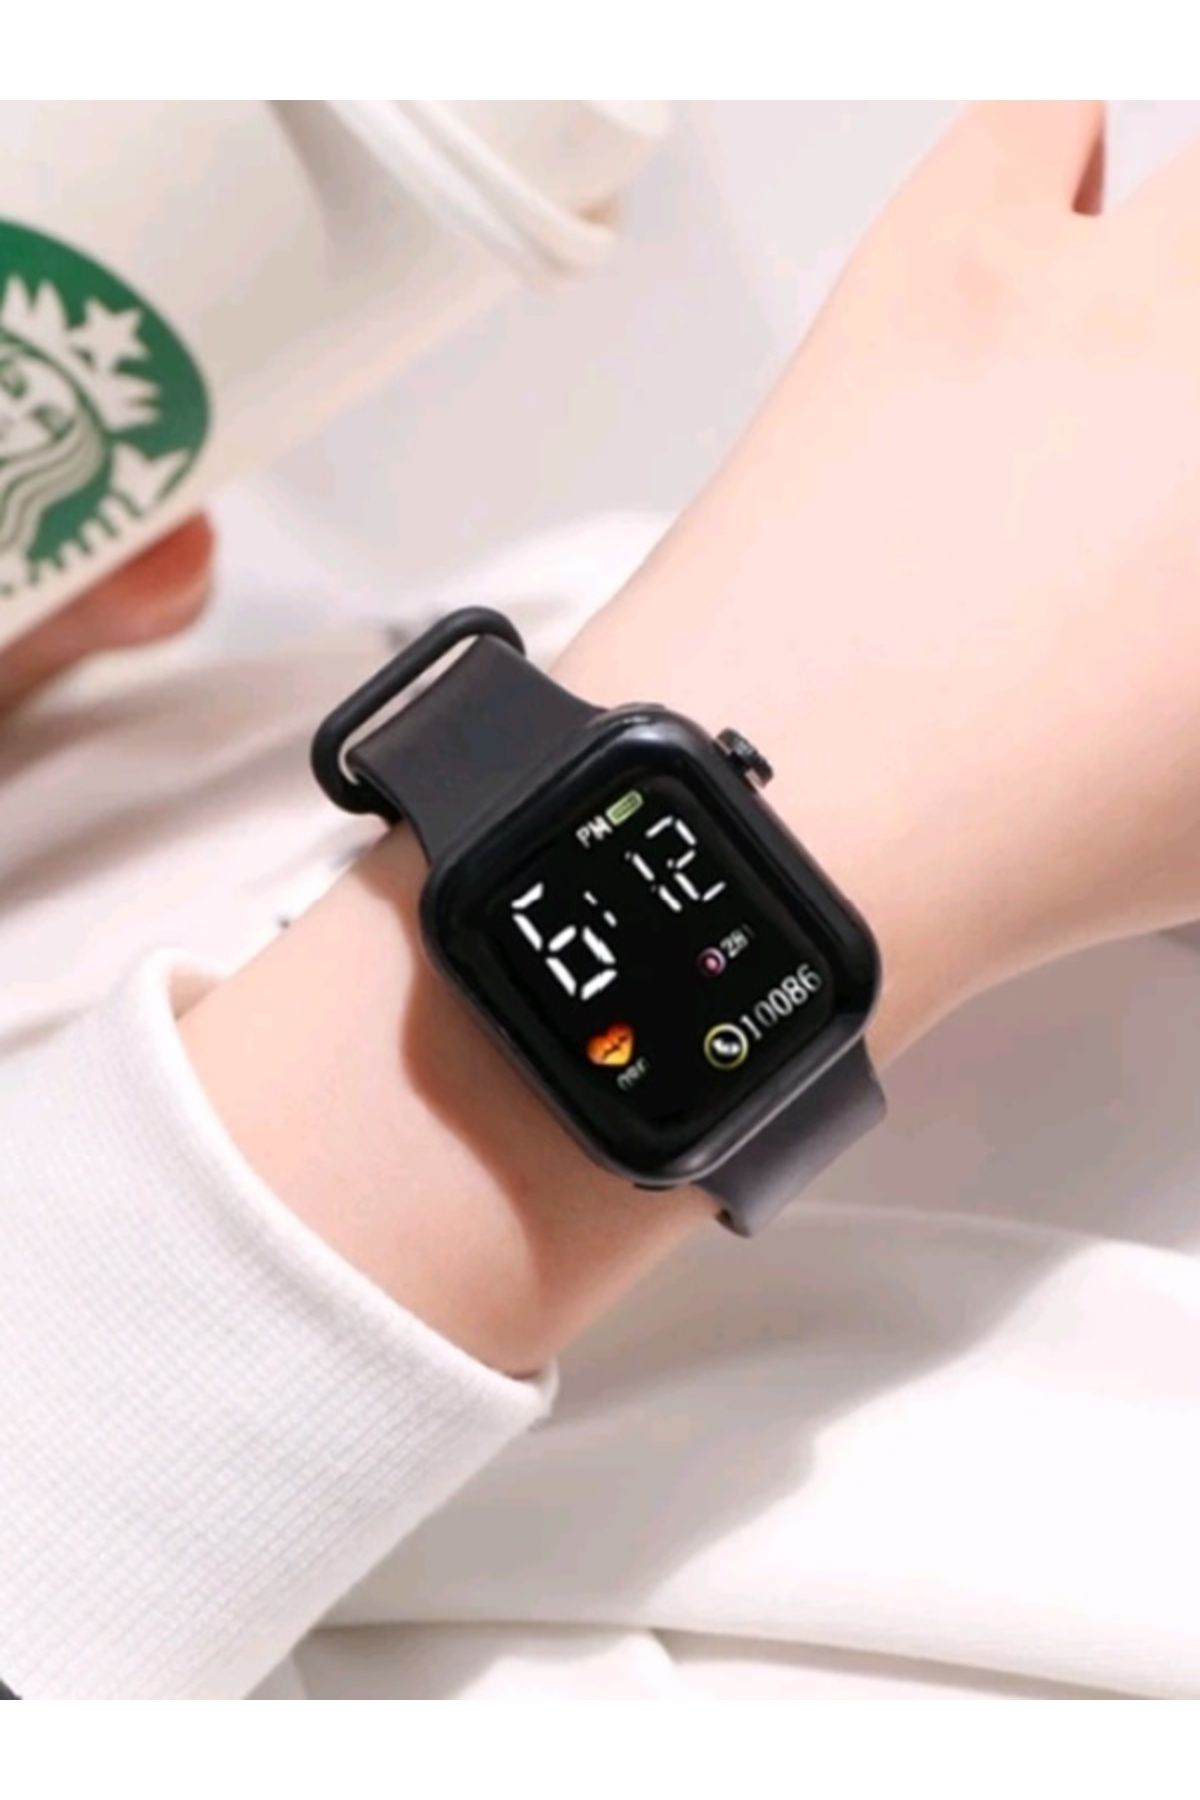 Shisa Jewel Siyah elektronik C002 kol saati LED dijital akıllı spor izle aydınlık kare arama kadın için. (60)